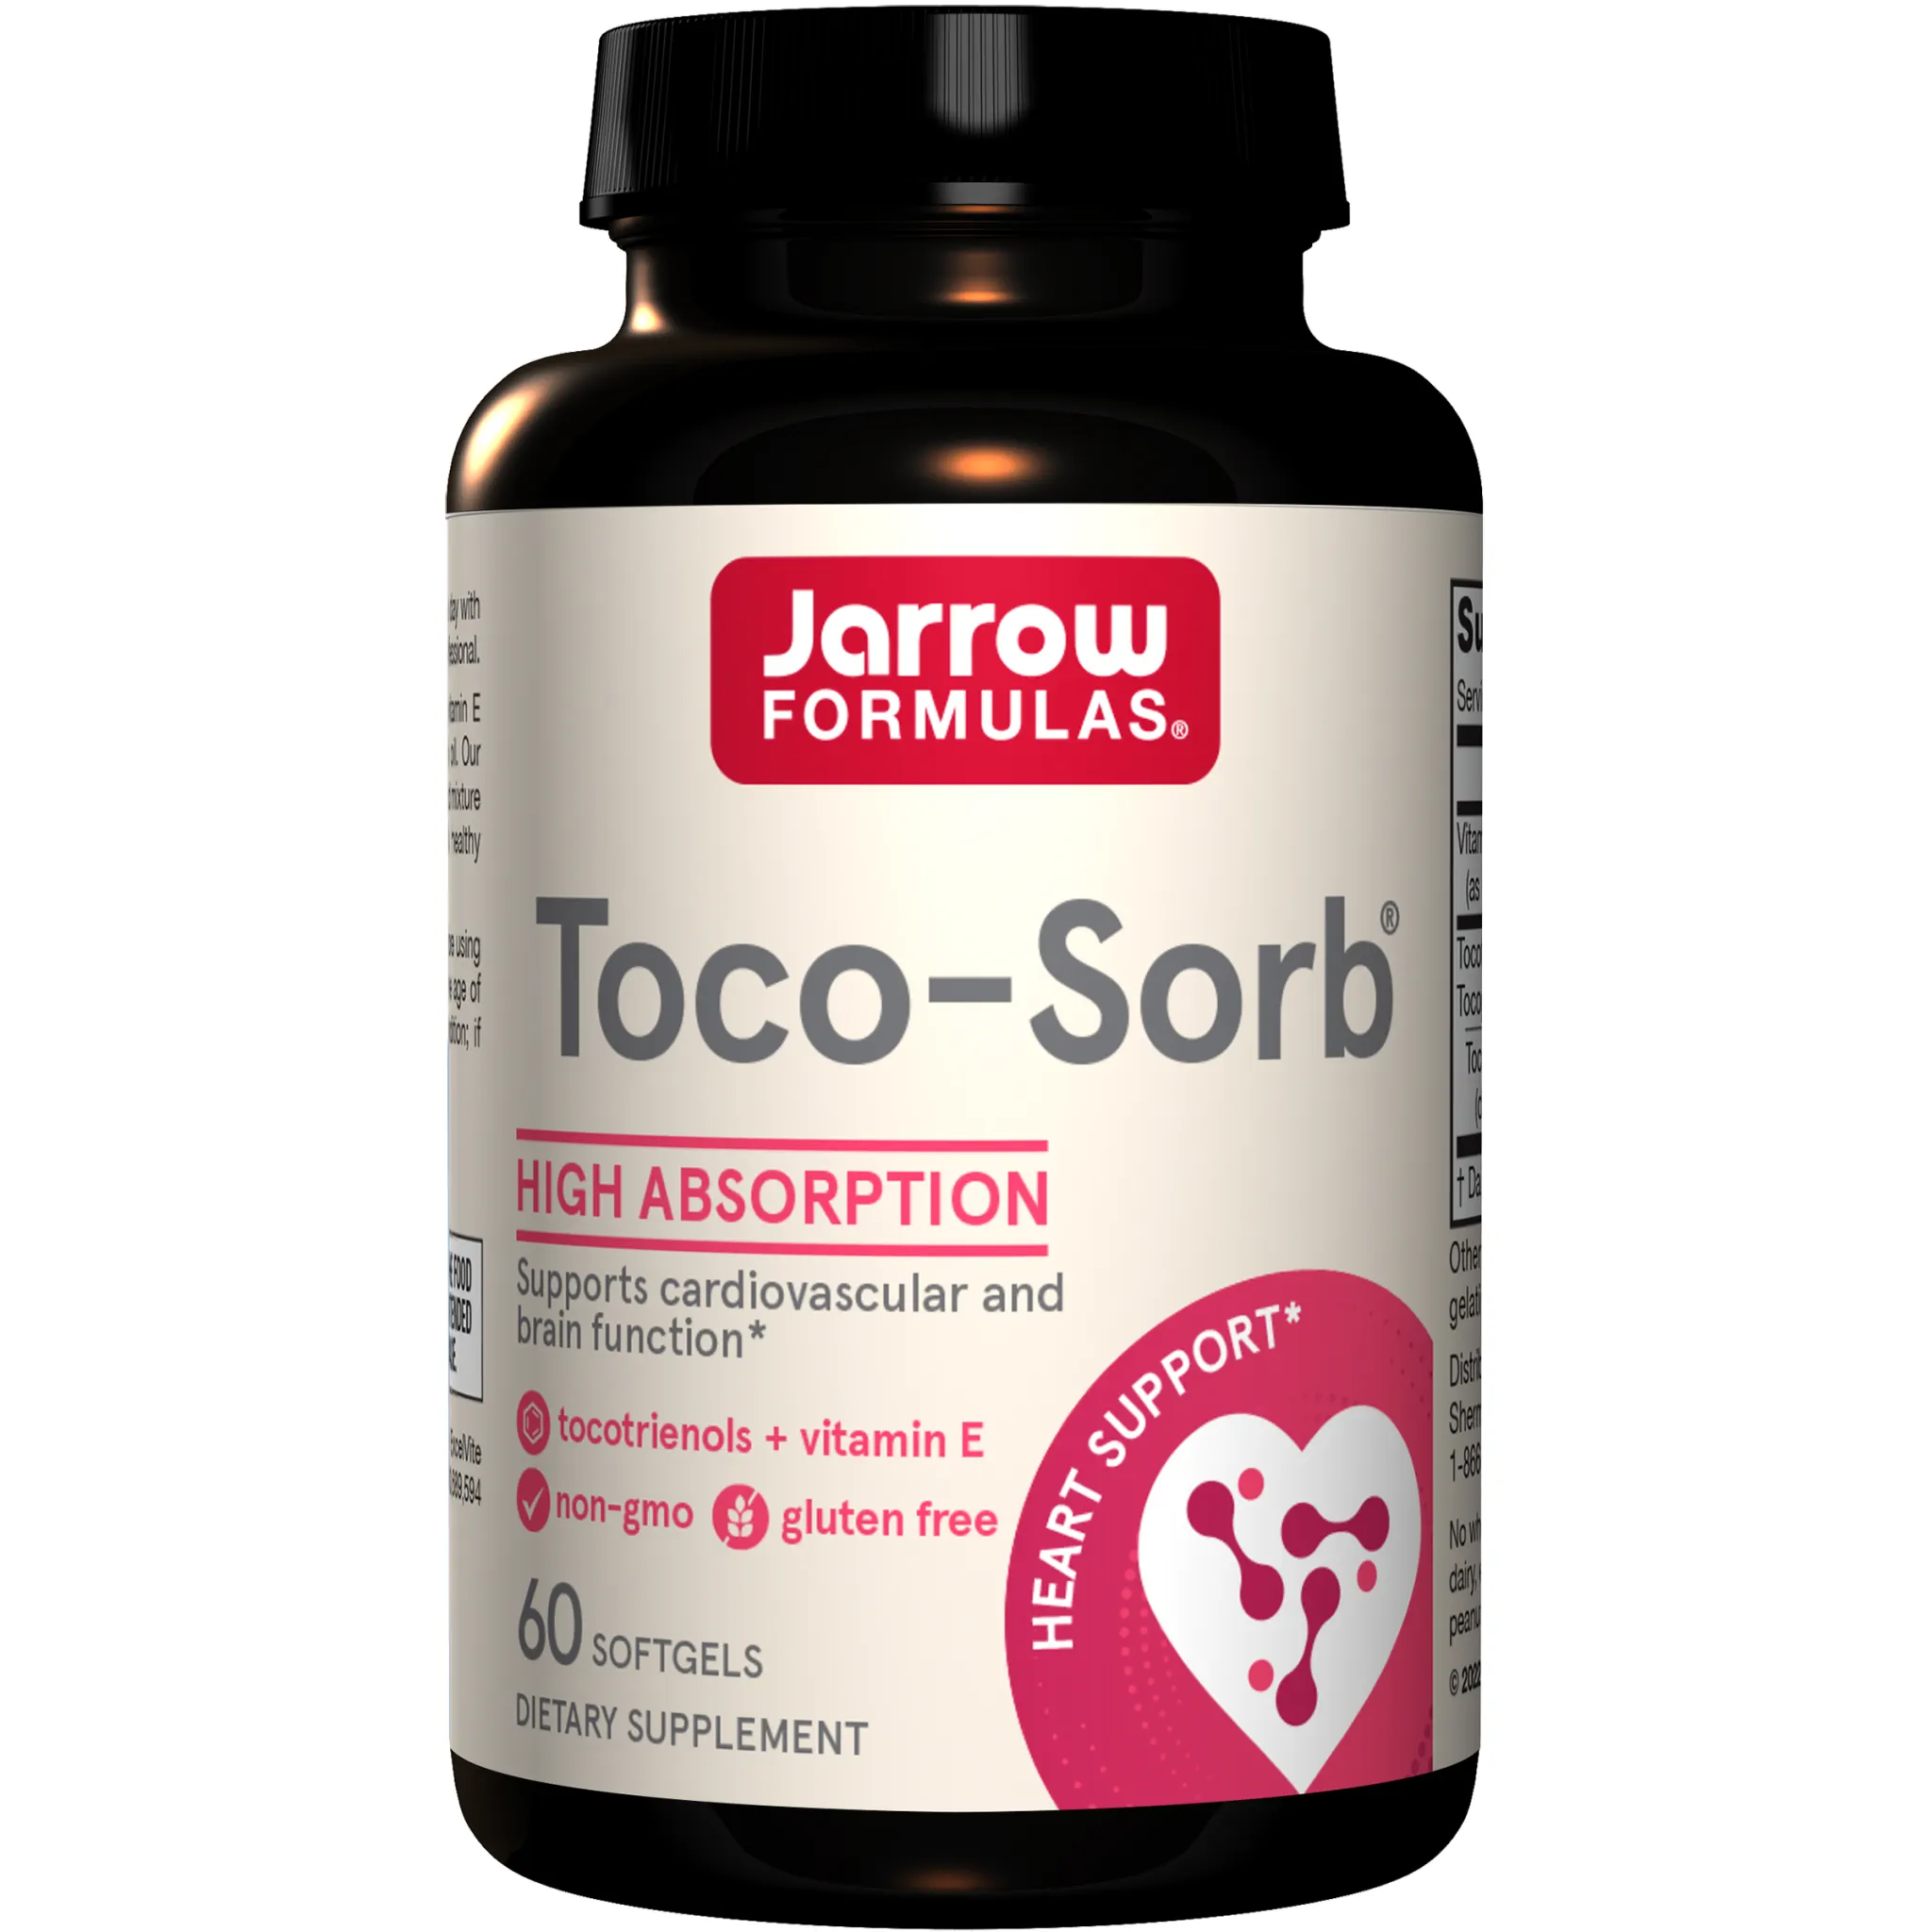 Jarrow Formulas - Toco Sorb (Toco Life)